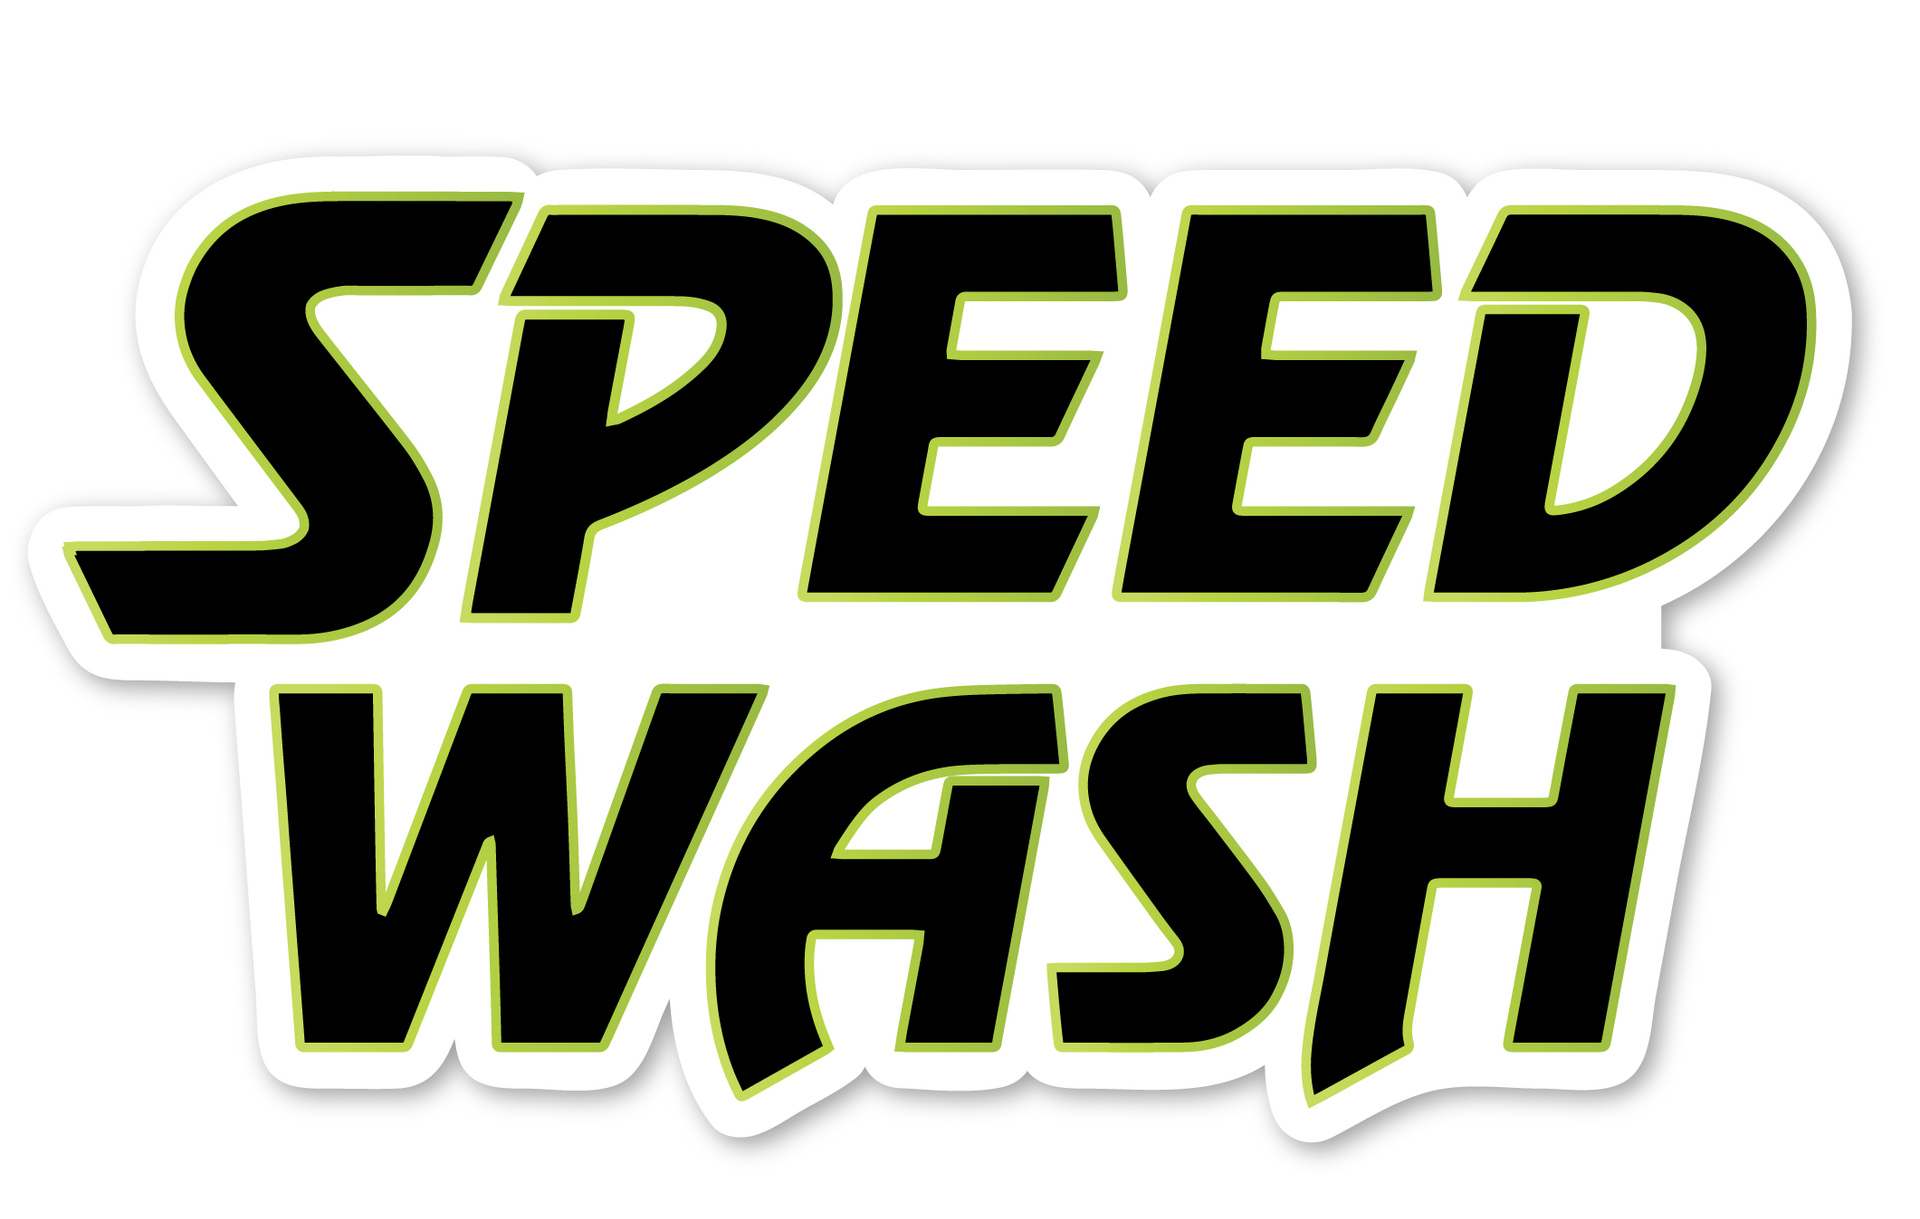 westlake speedwash logo - new gas station and car wash coming to westlake village California